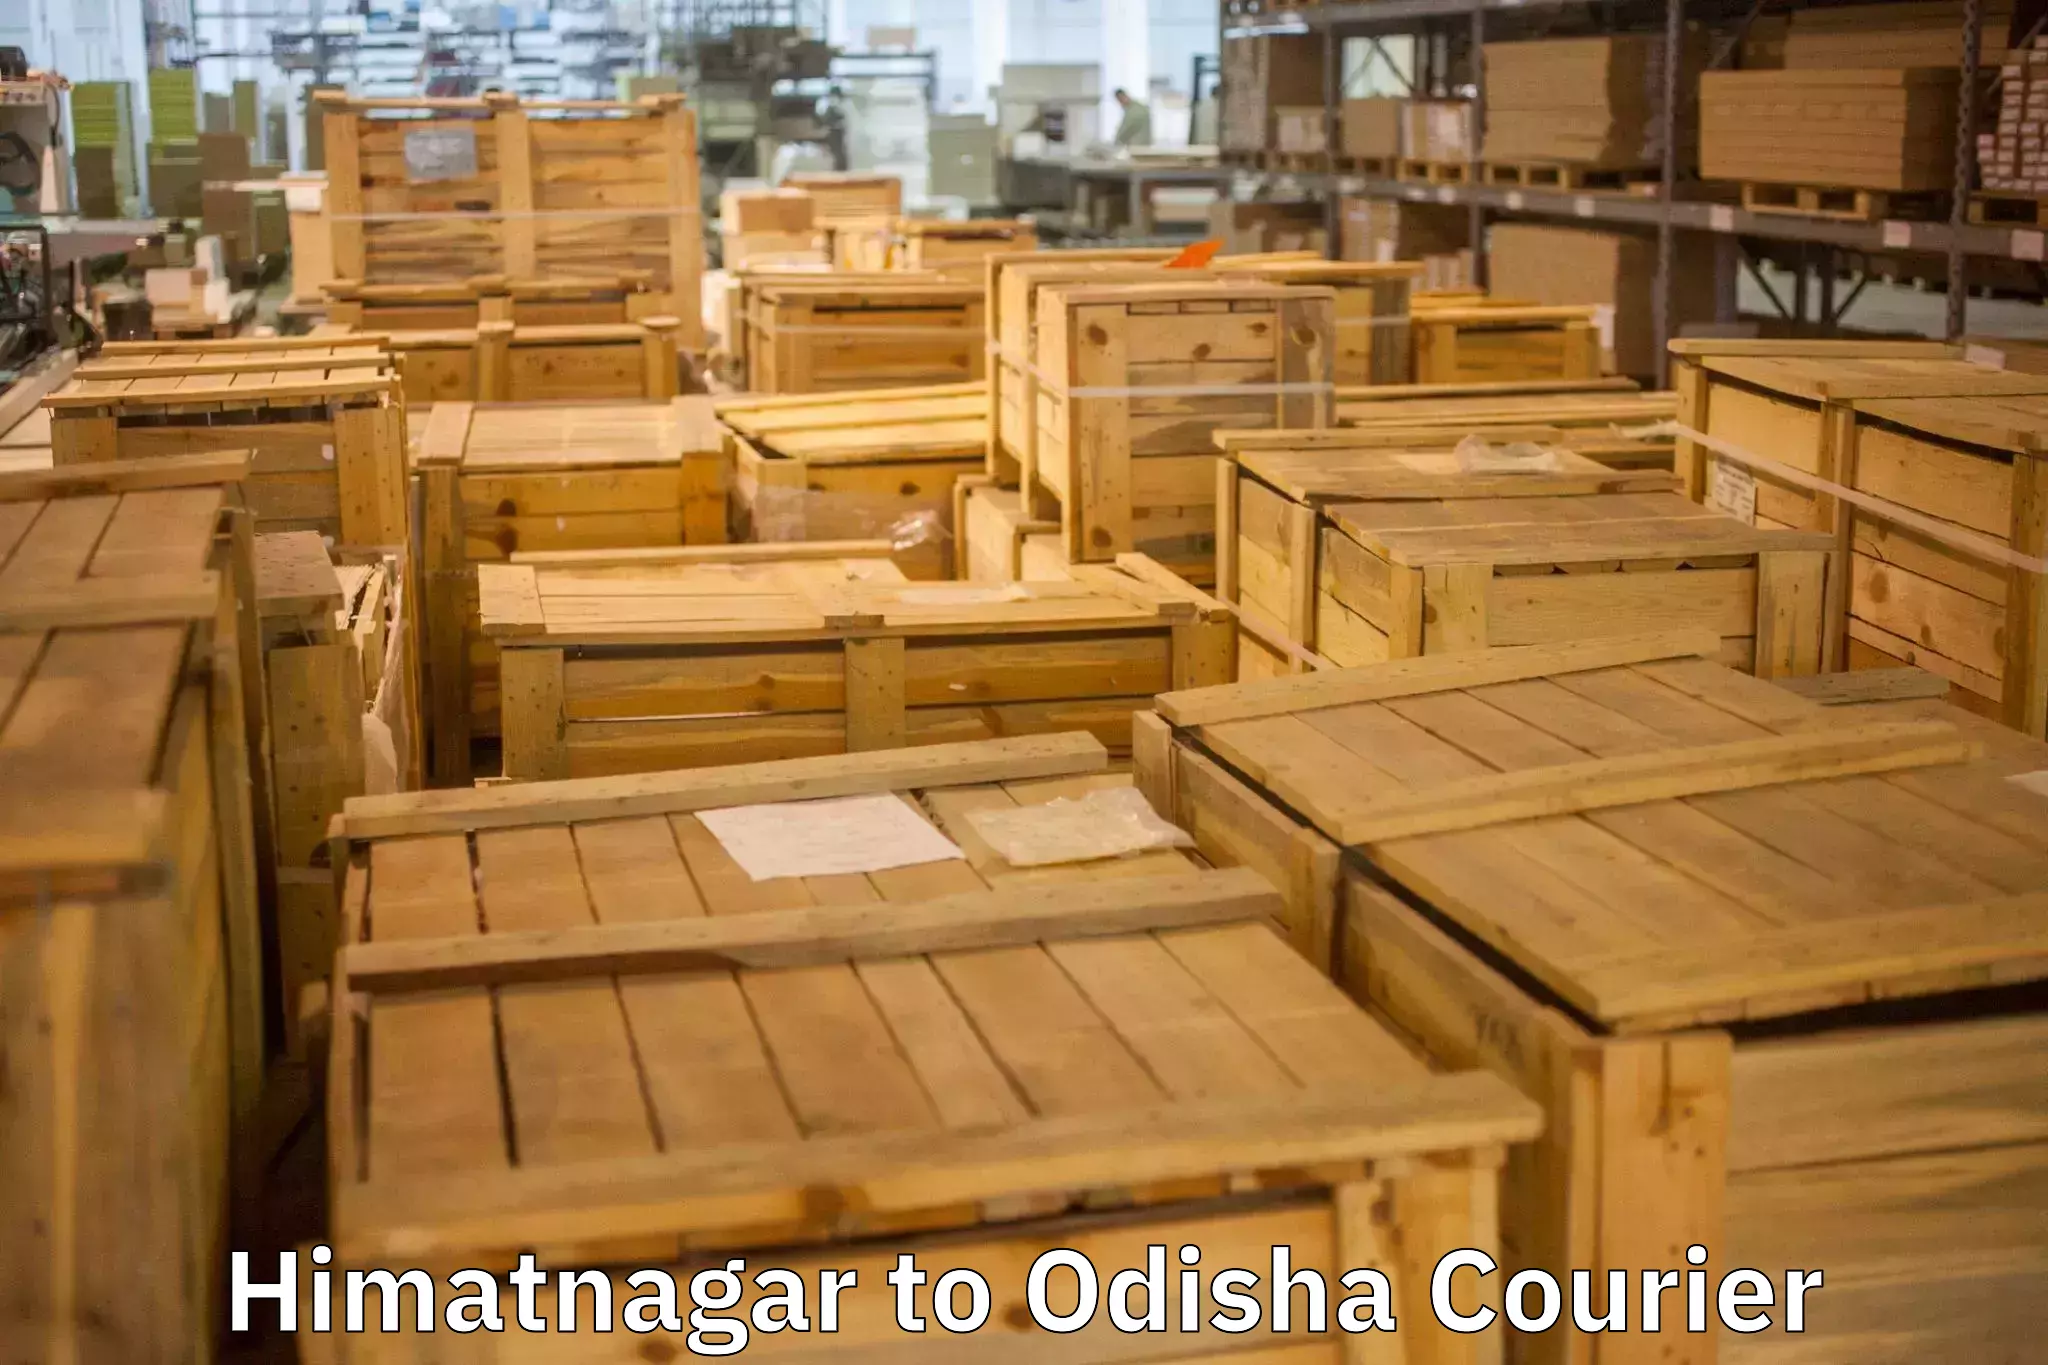 Moving and packing experts Himatnagar to Kantamal